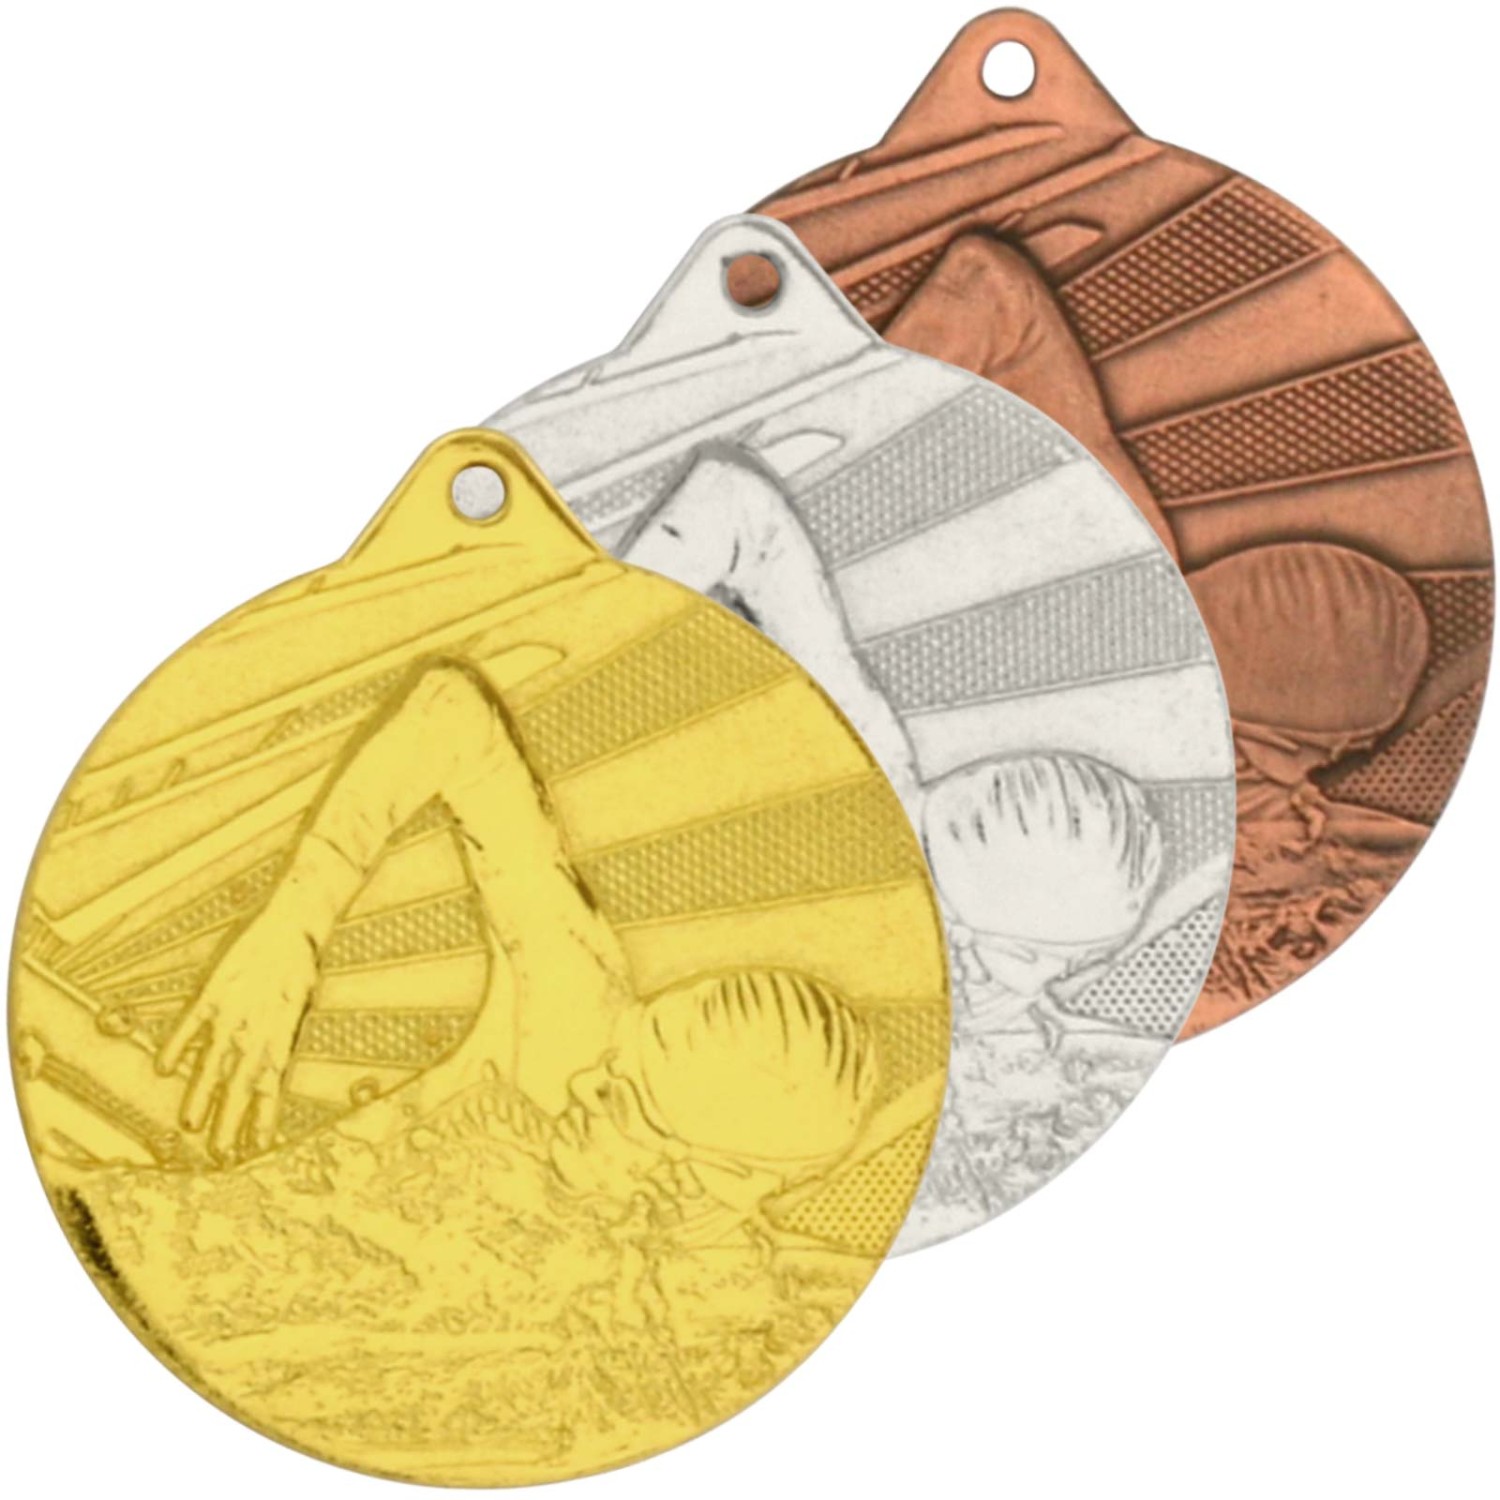 0. Foto Medaille Schwimmen 2 Medaillen 50 mm rund gold silber bronze Set (Sorte: Set je 1x gold / silber / bronze)